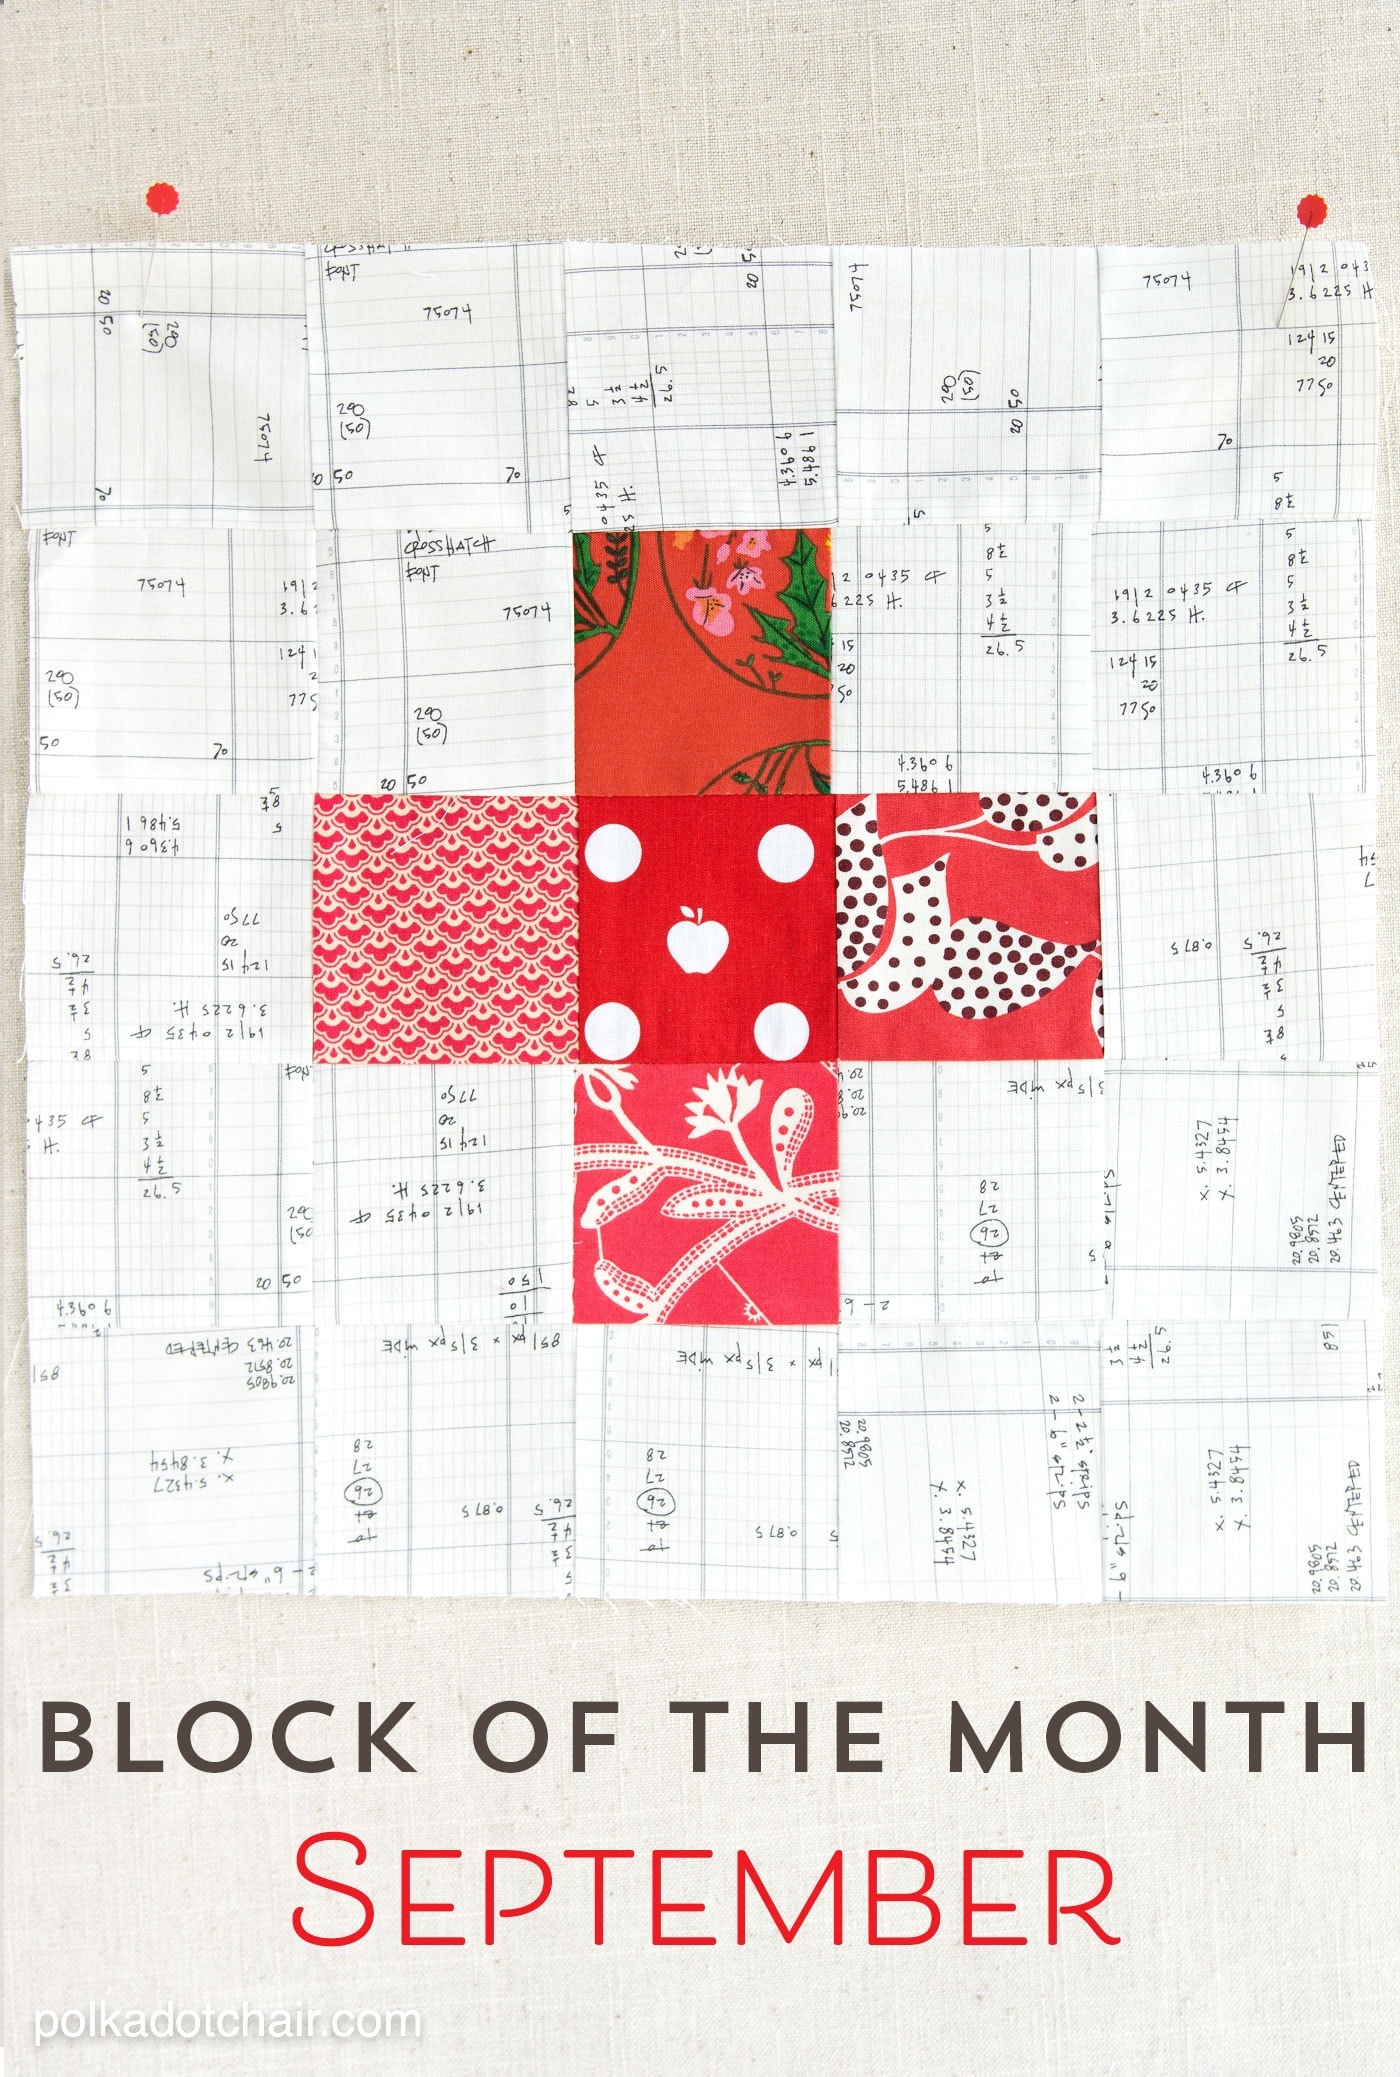 Le bloc quilt du mois de septembre, une variante d'un simple bloc plus. Rejoignez la série bloc du mois et réalisez une courtepointe un mois à la fois.